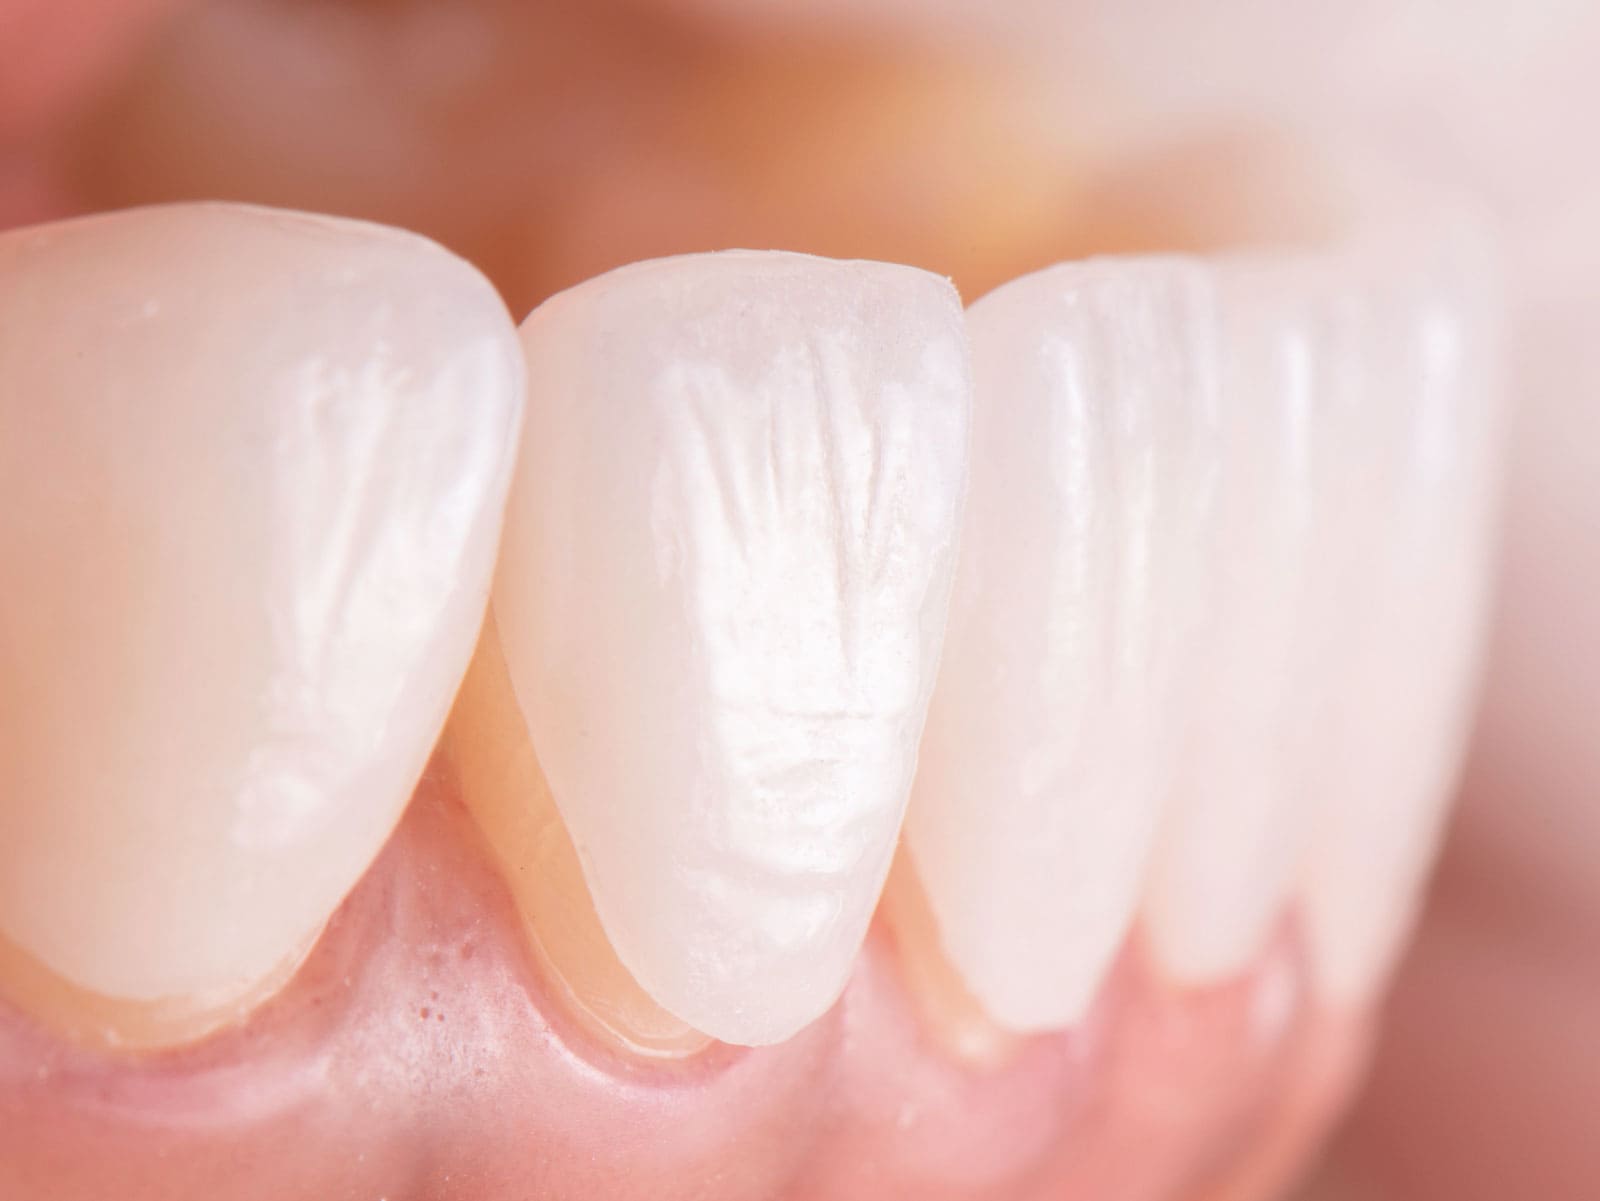 Porselen Lamine Diş Protezlerinin Hangi Durumlarda Tercih Edilmesi Uygun Değildir?